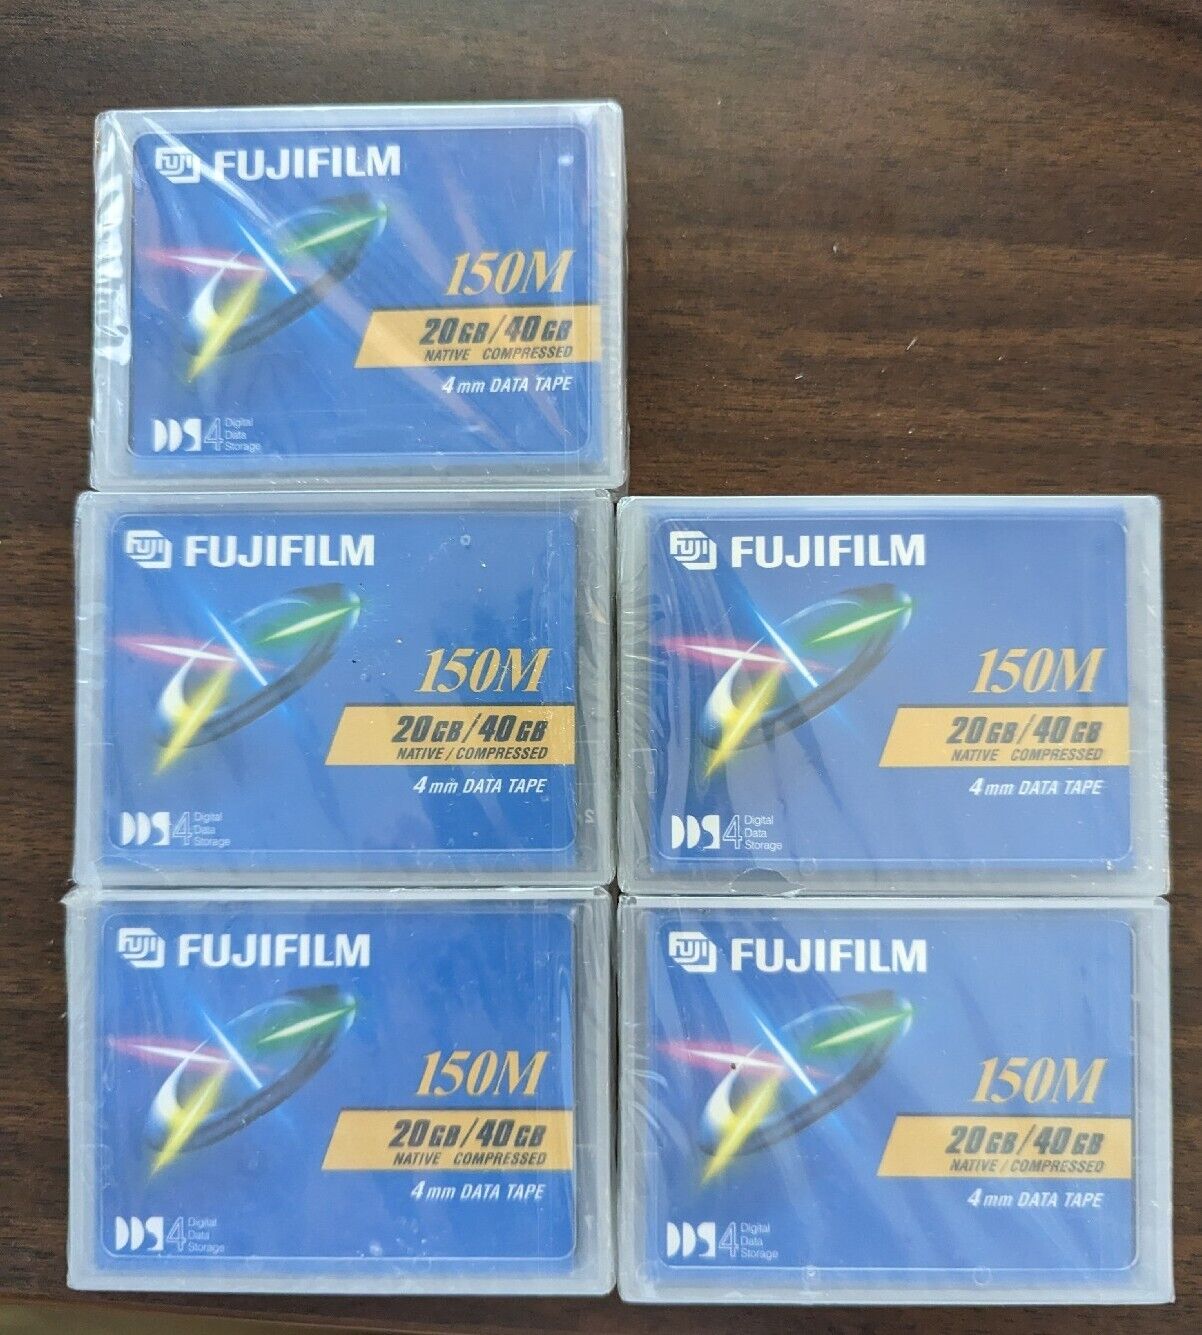 Fujifilm 150M DAT DDS 4mm Data Tape 20GB 40GB Cartridge Lot of (5) New